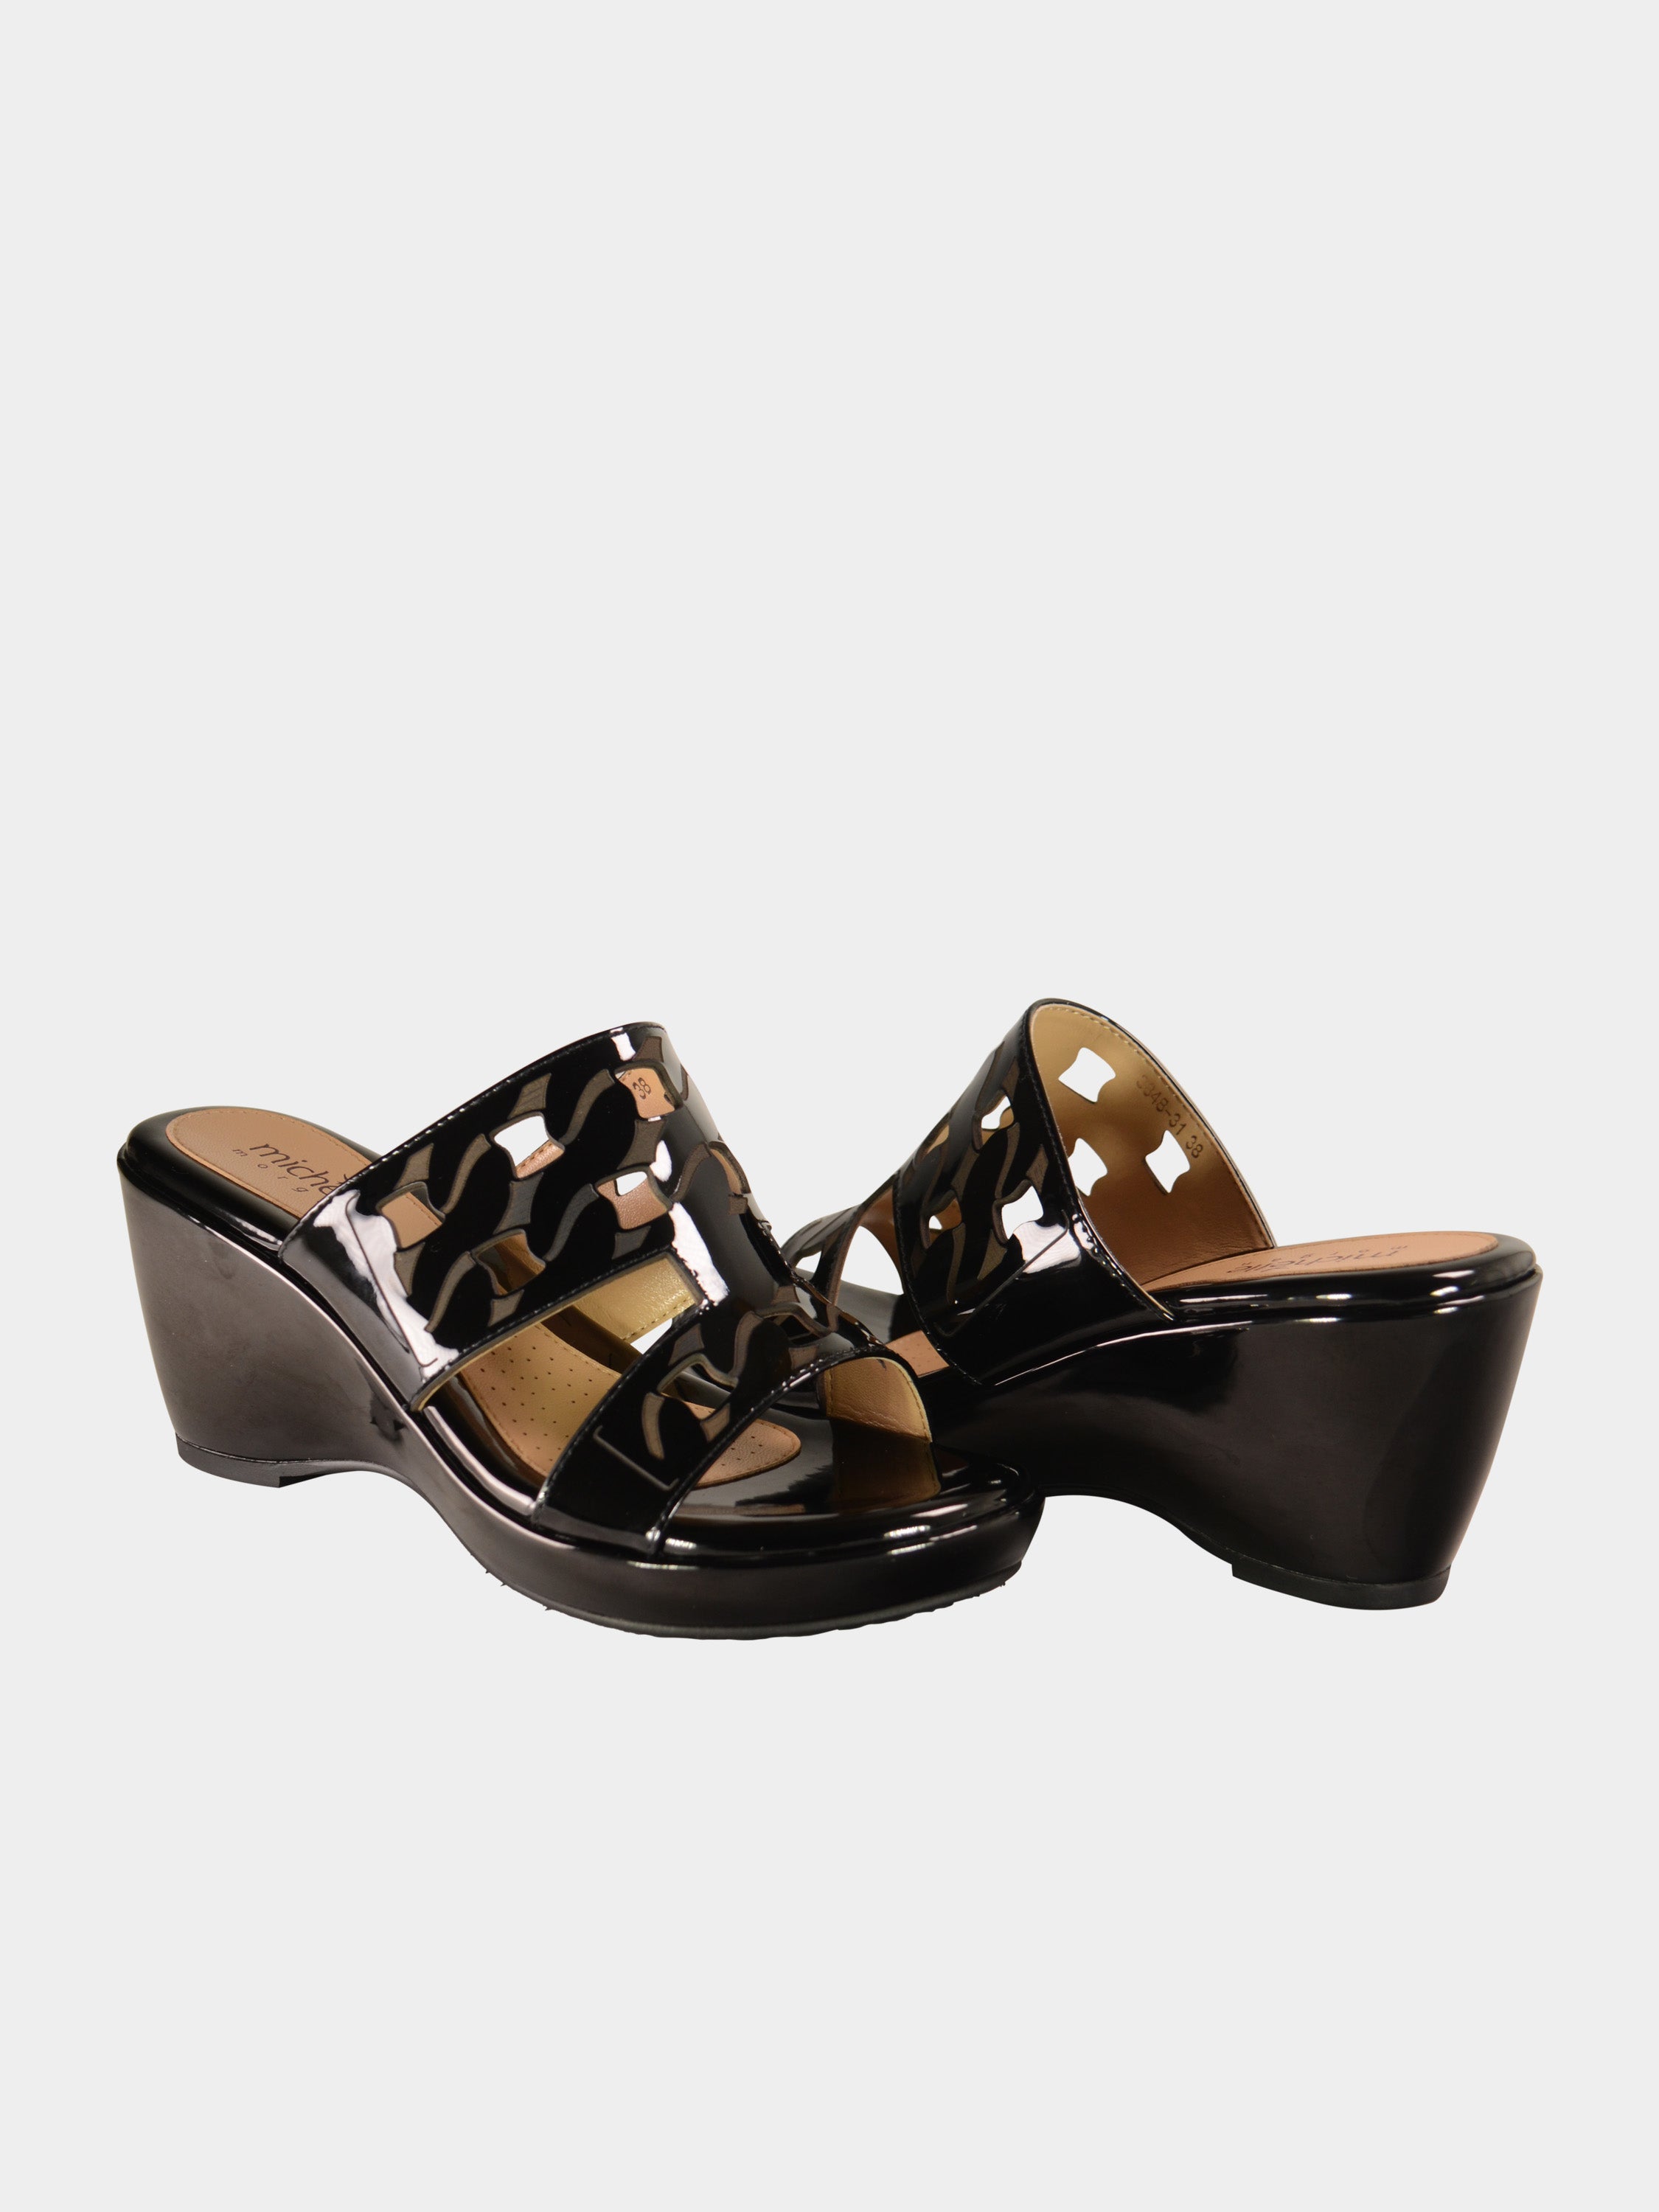 Michelle Morgan 3848-31 Women's Wedge Sandals #color_Black